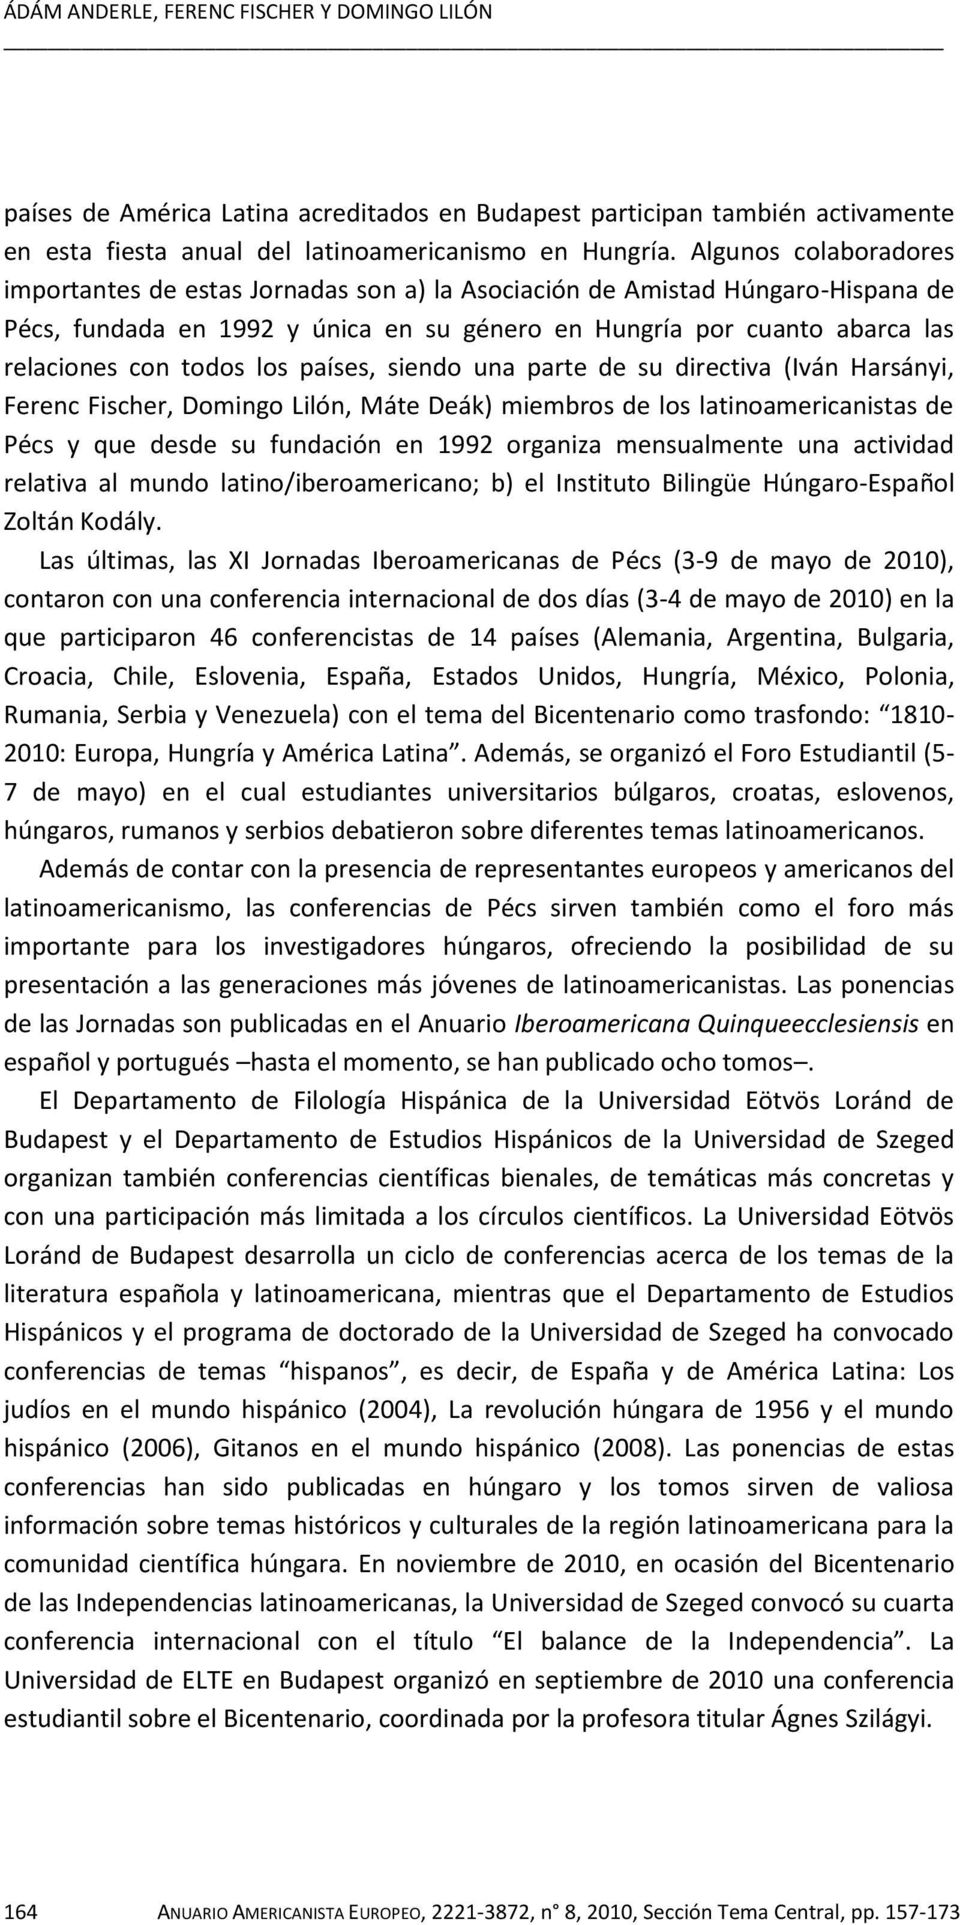 los países, siendo una parte de su directiva (Iván Harsányi, Ferenc Fischer, Domingo Lilón, Máte Deák) miembros de los latinoamericanistas de Pécs y que desde su fundación en 1992 organiza